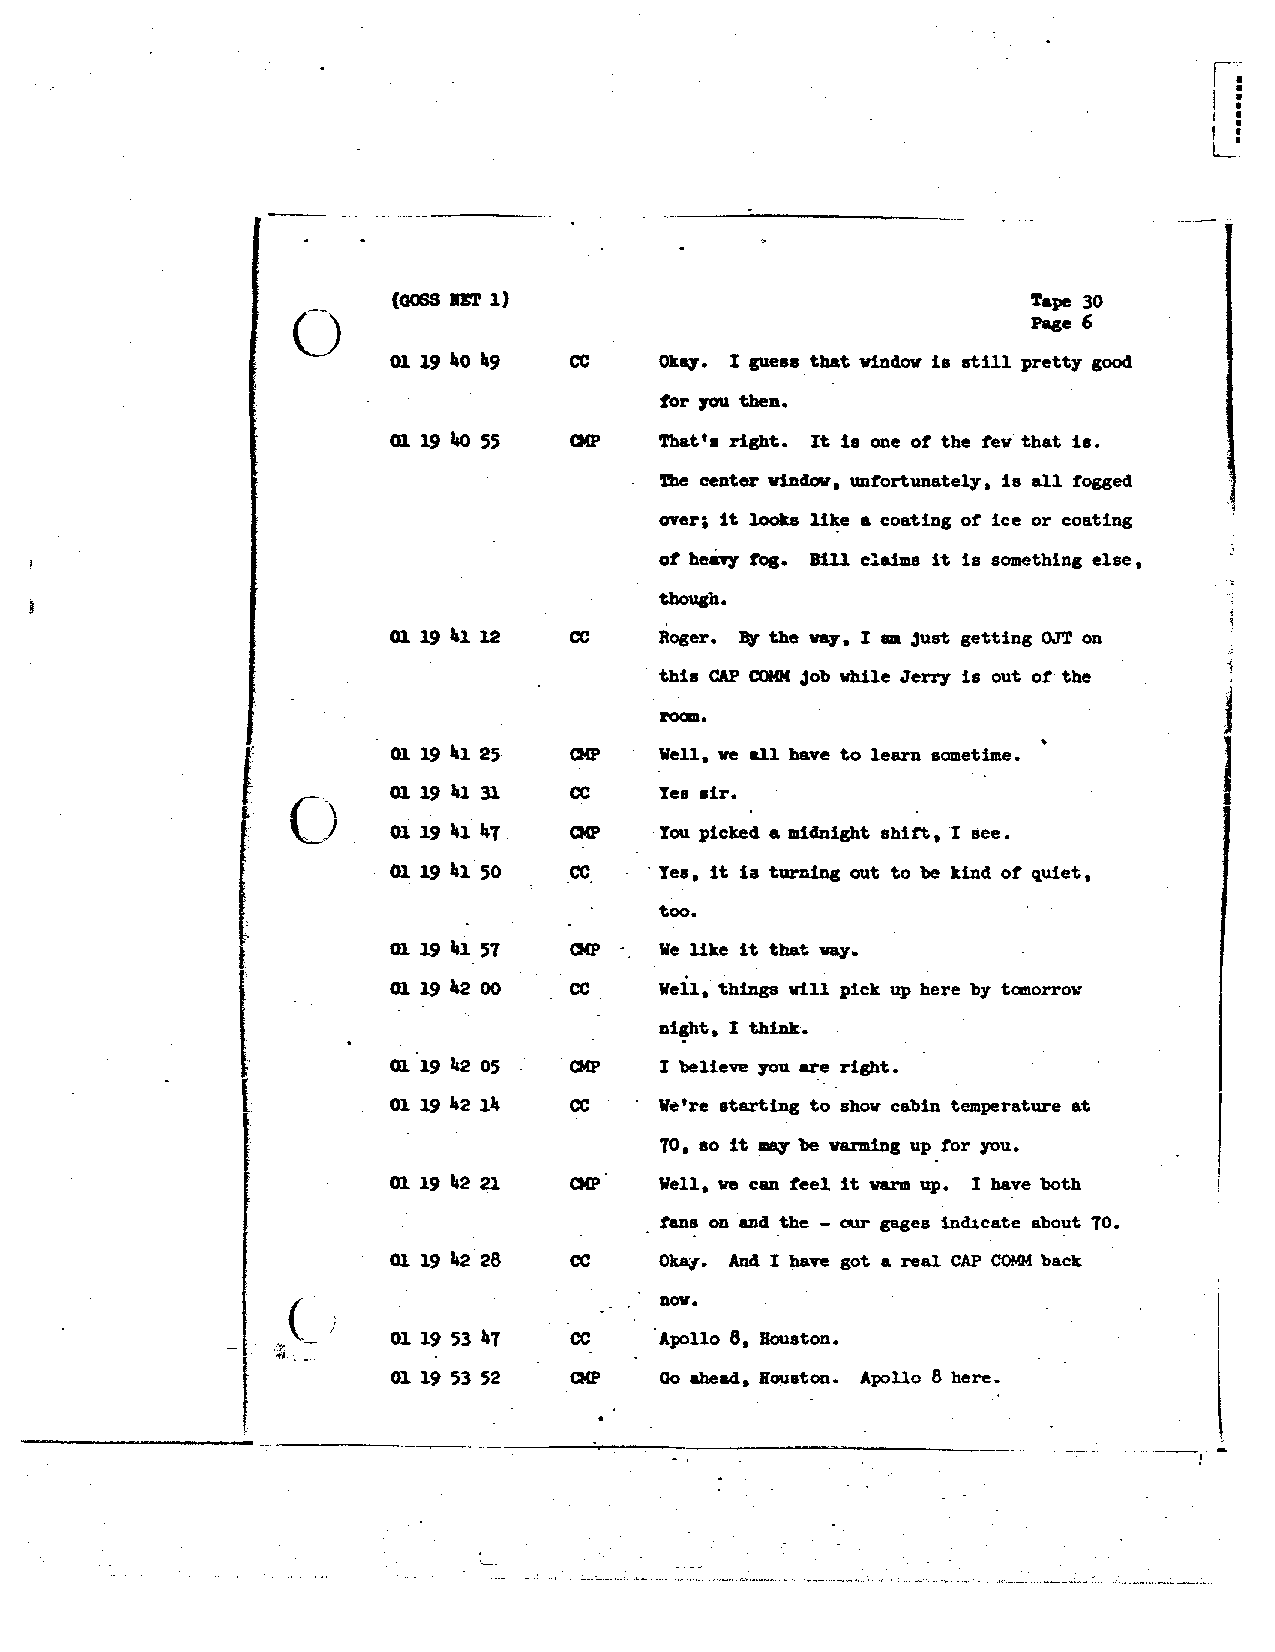 Page 235 of Apollo 8’s original transcript